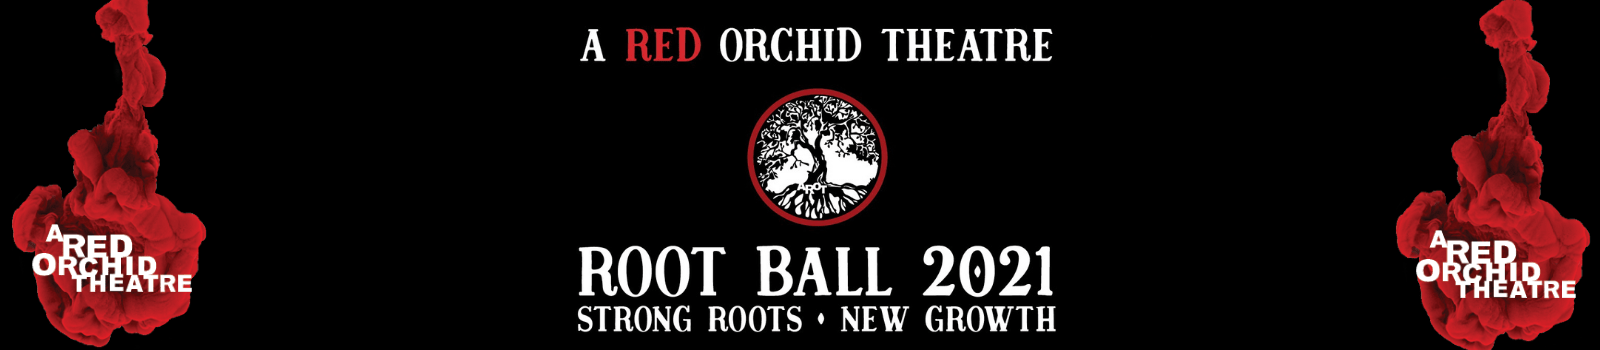 Root Ball-website banner-min